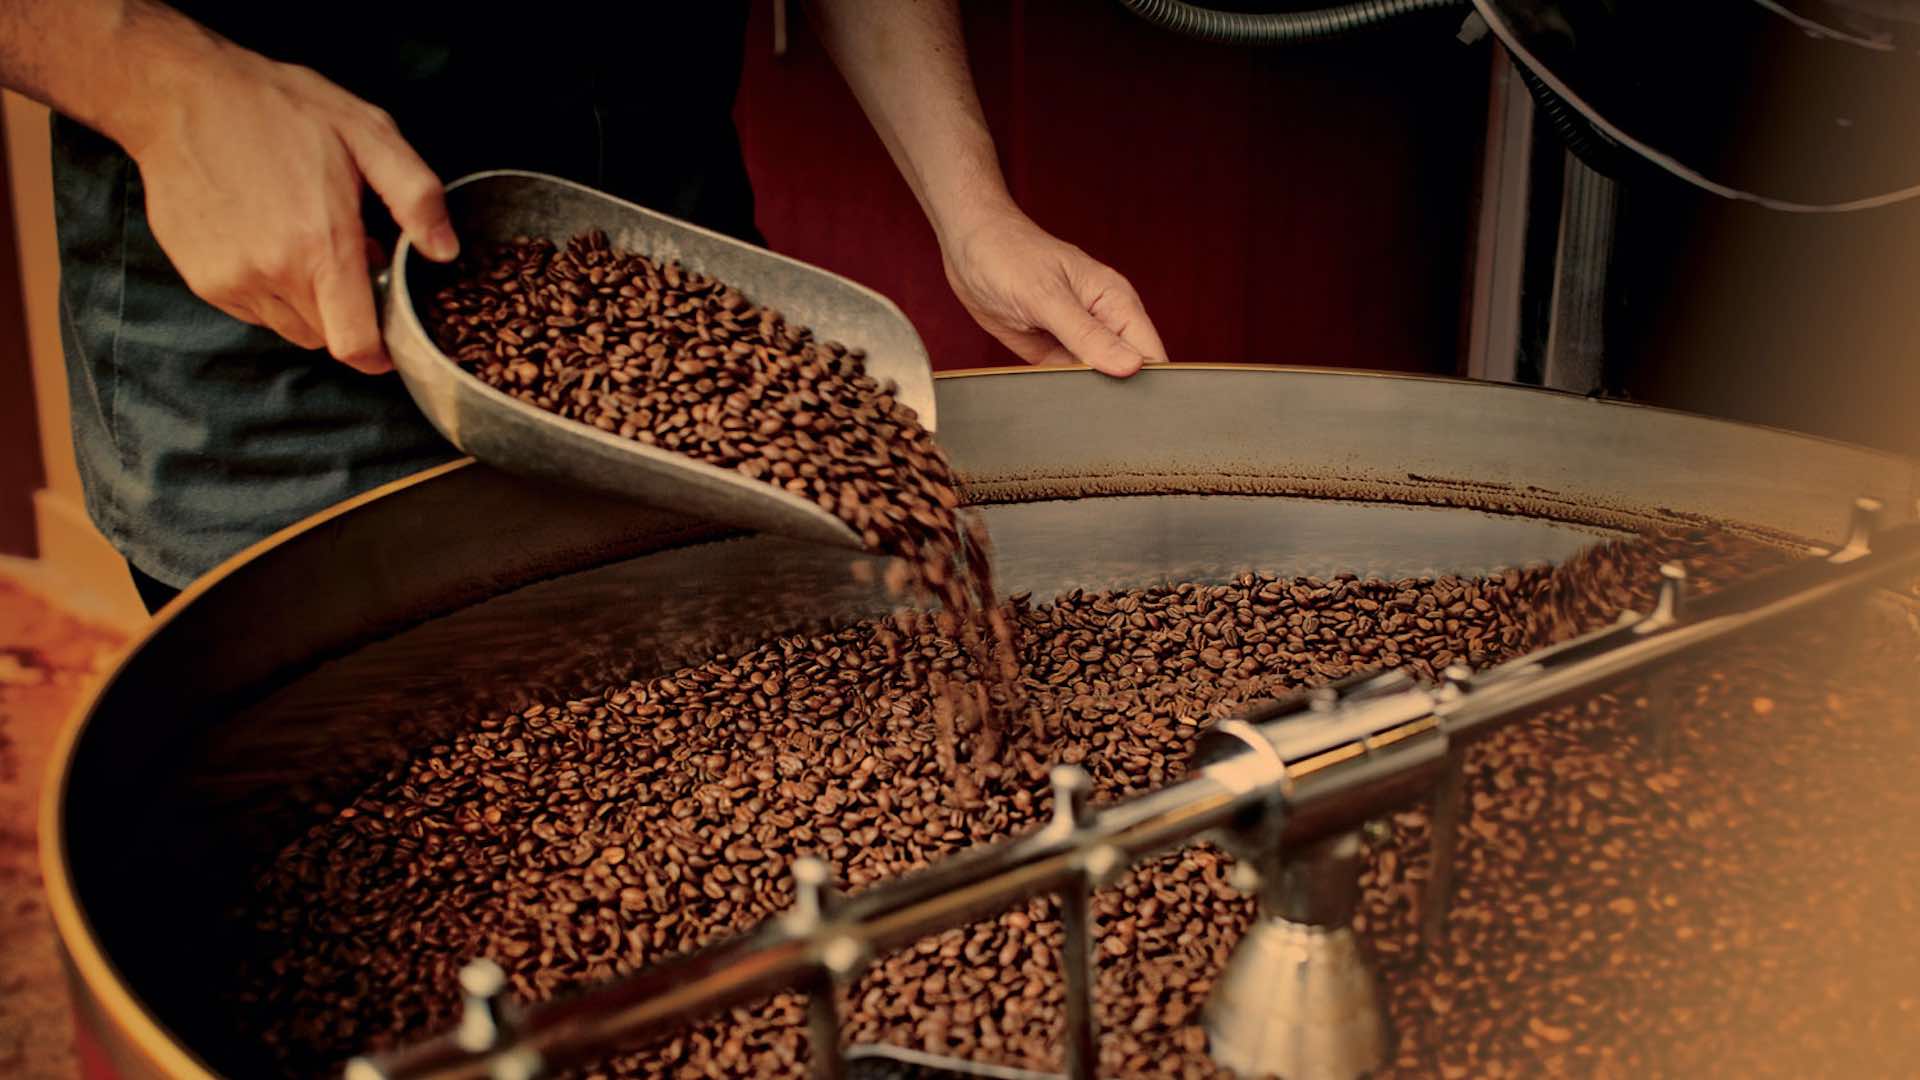 Starbucks'ın dünya çapında bir kahve santrali olma fenomenini ortaya çıkarmak